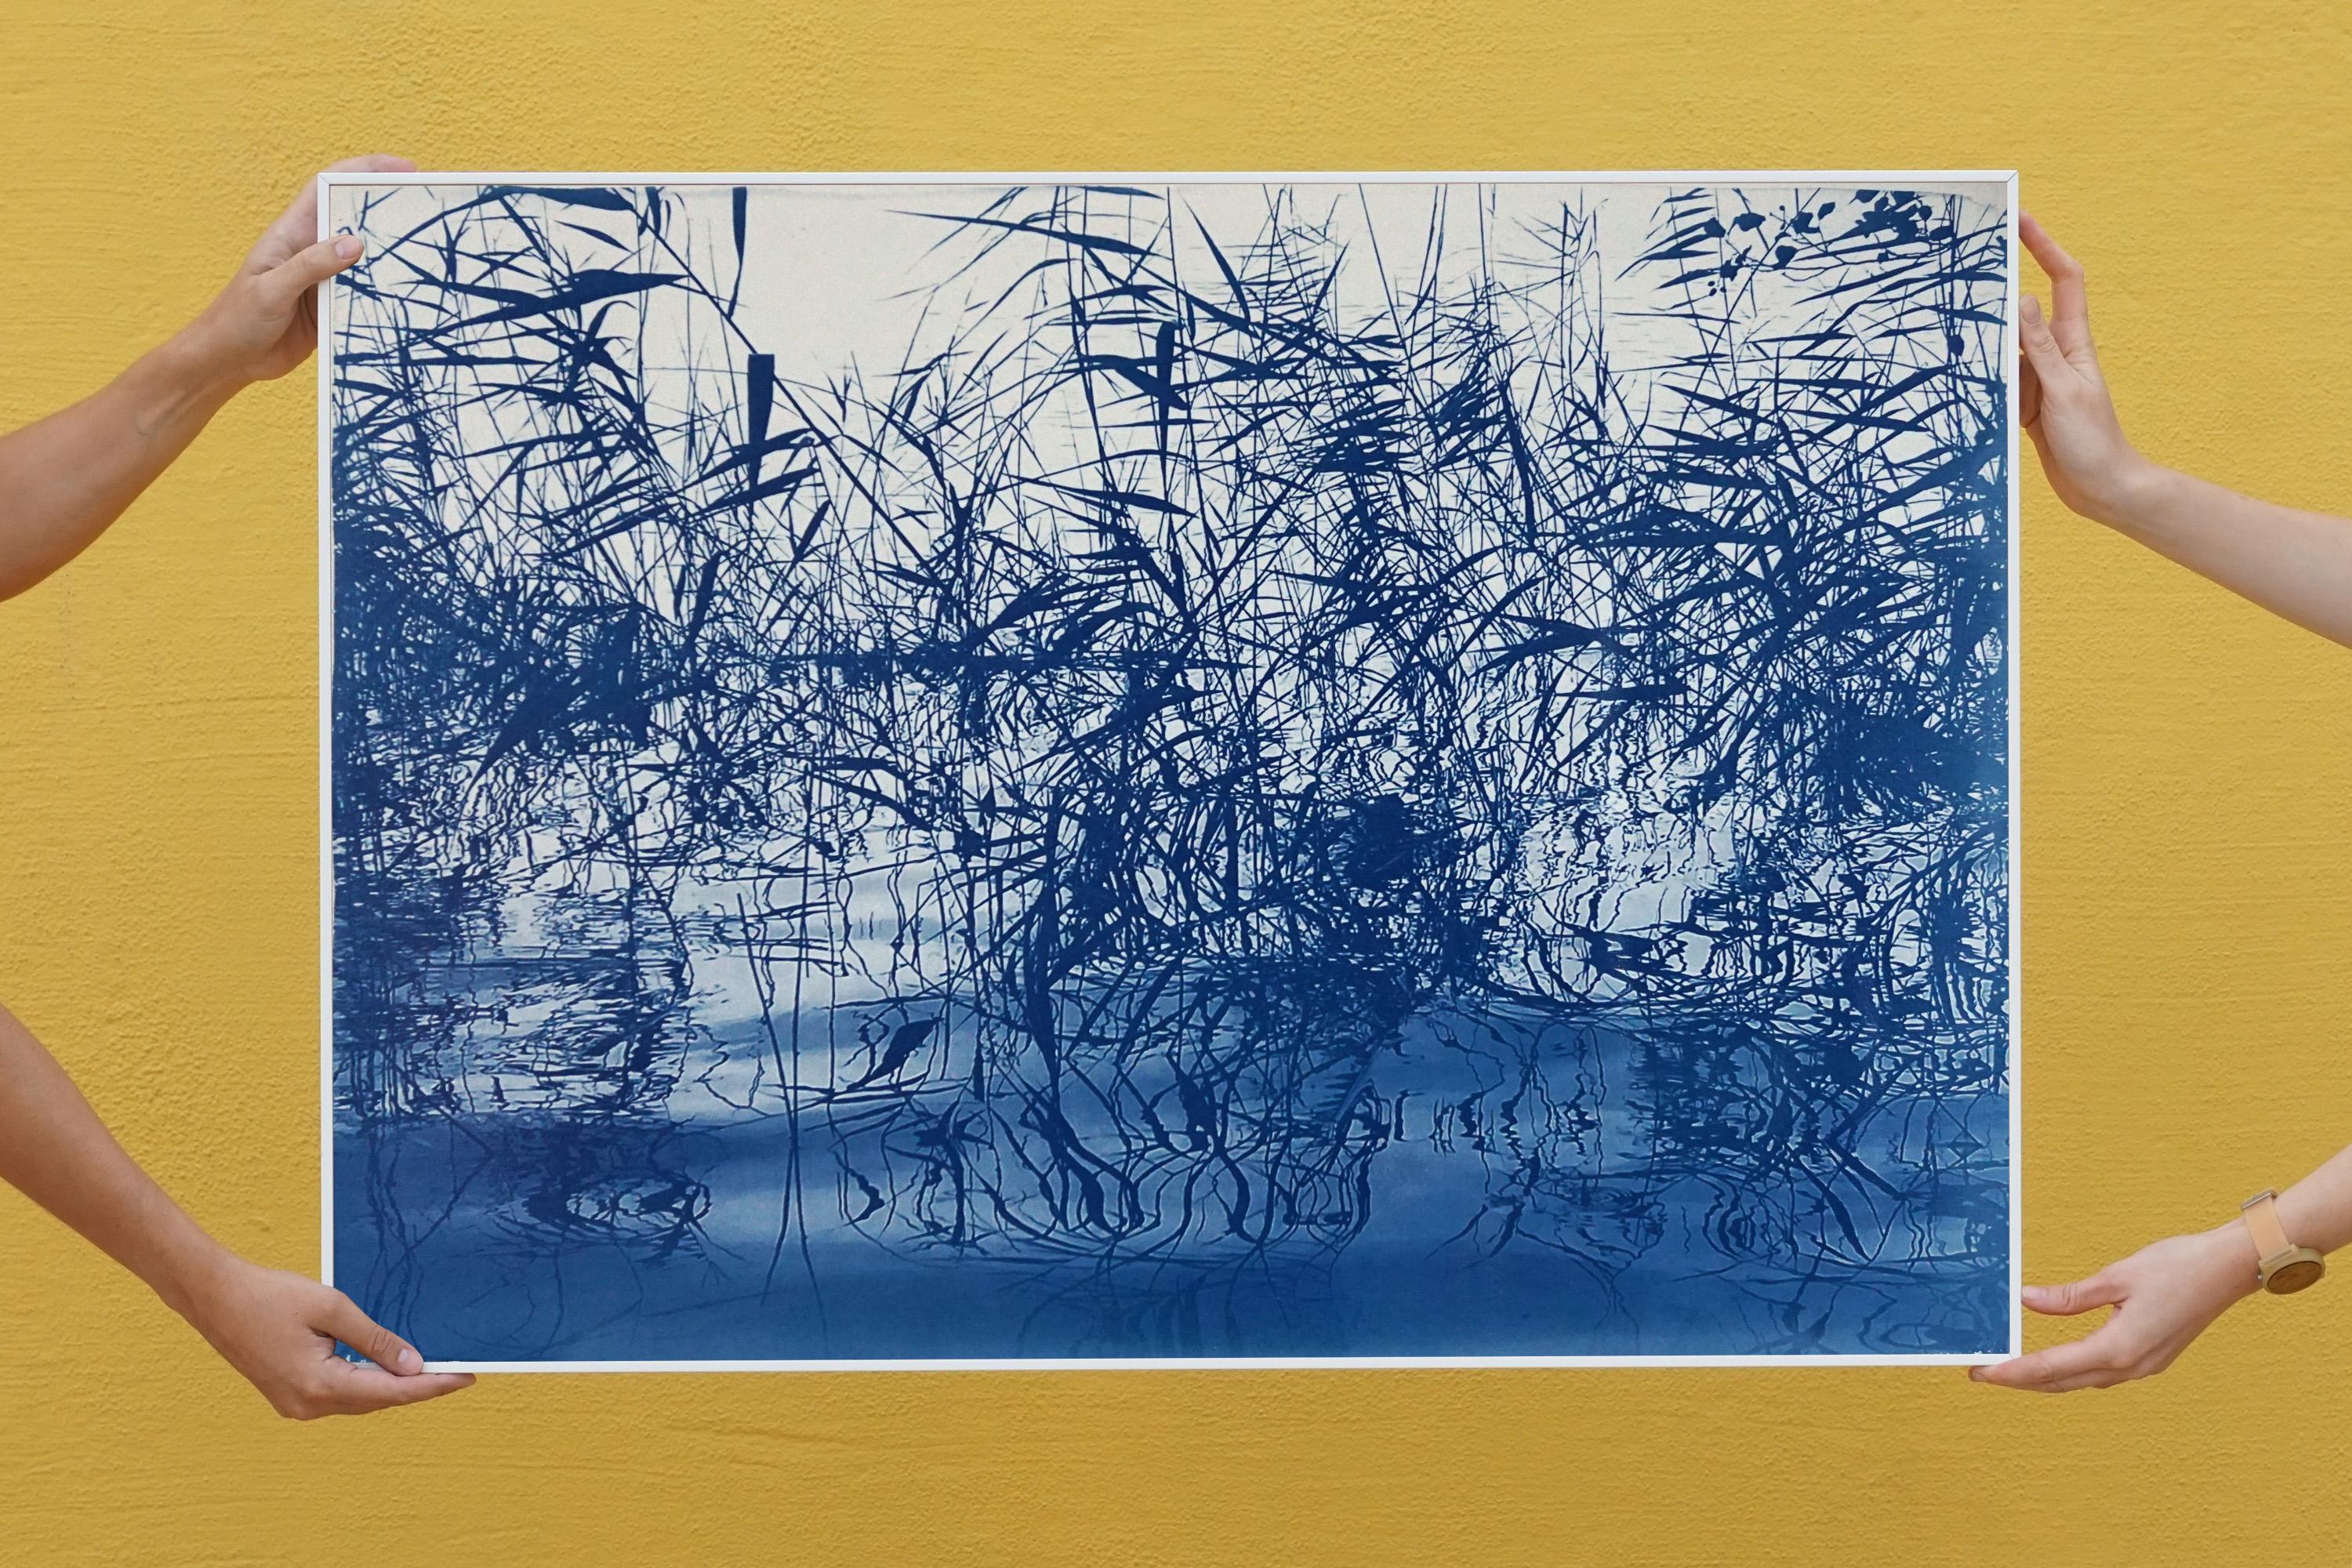 Mystic Louisiana Marsh-Landschaft in Blautönen, limitierte Auflage, Zyanotyp-Druck  (Realismus), Print, von Kind of Cyan